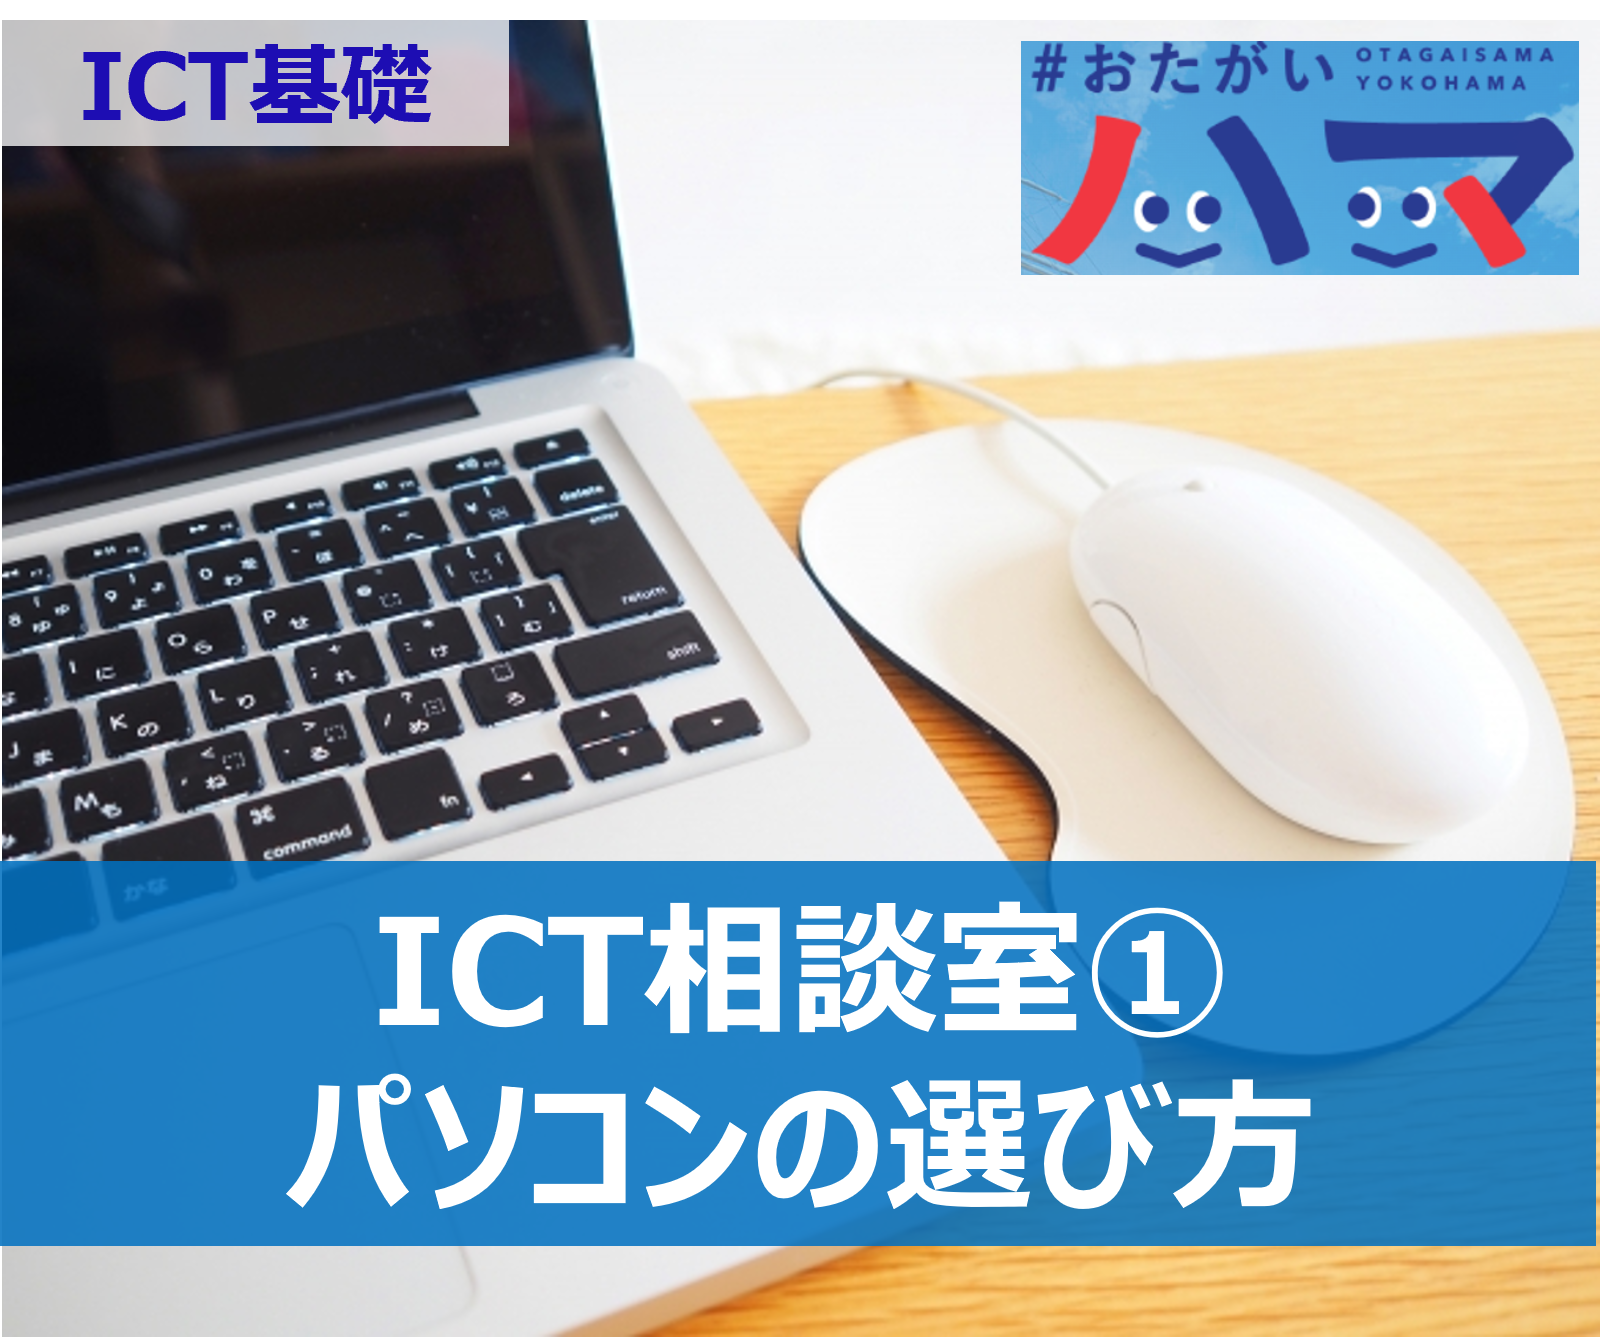 パソコンの選び方などのITを使ったコミュニケーション ICT相談室① - ICT基礎